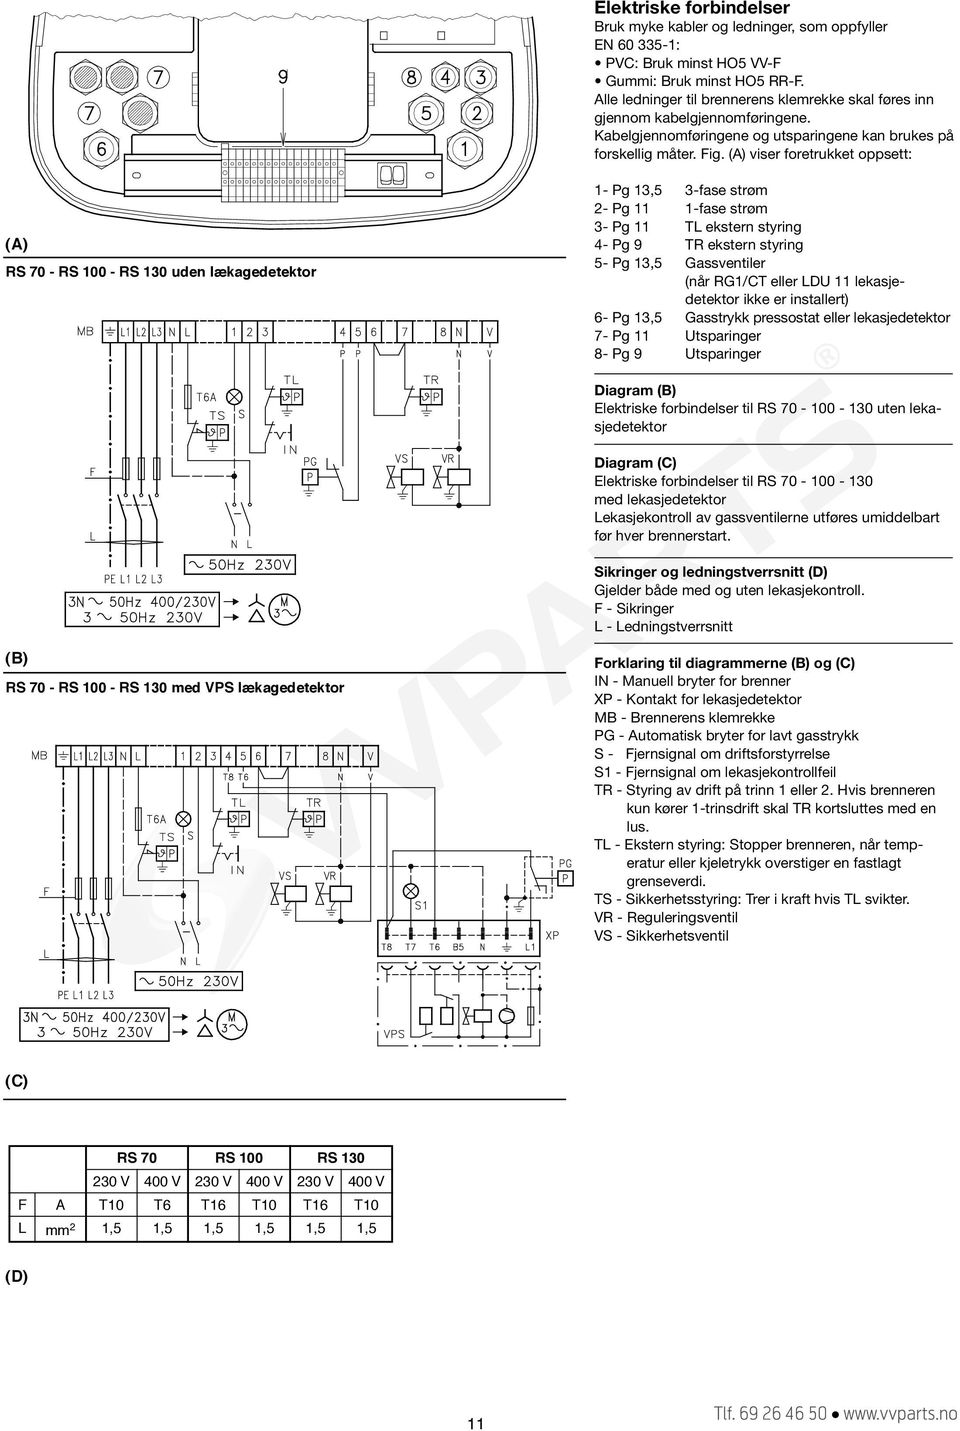 4- Pg 9 TR ekstern styring 5- Pg 13,5 Gassventiler (når RG1/CT eller LDU 11 lekasjedetektor ikke er installert) 6- Pg 13,5 Gasstrykk pressostat eller lekasjedetektor 7- Pg 11 Utsparinger 8- Pg 9